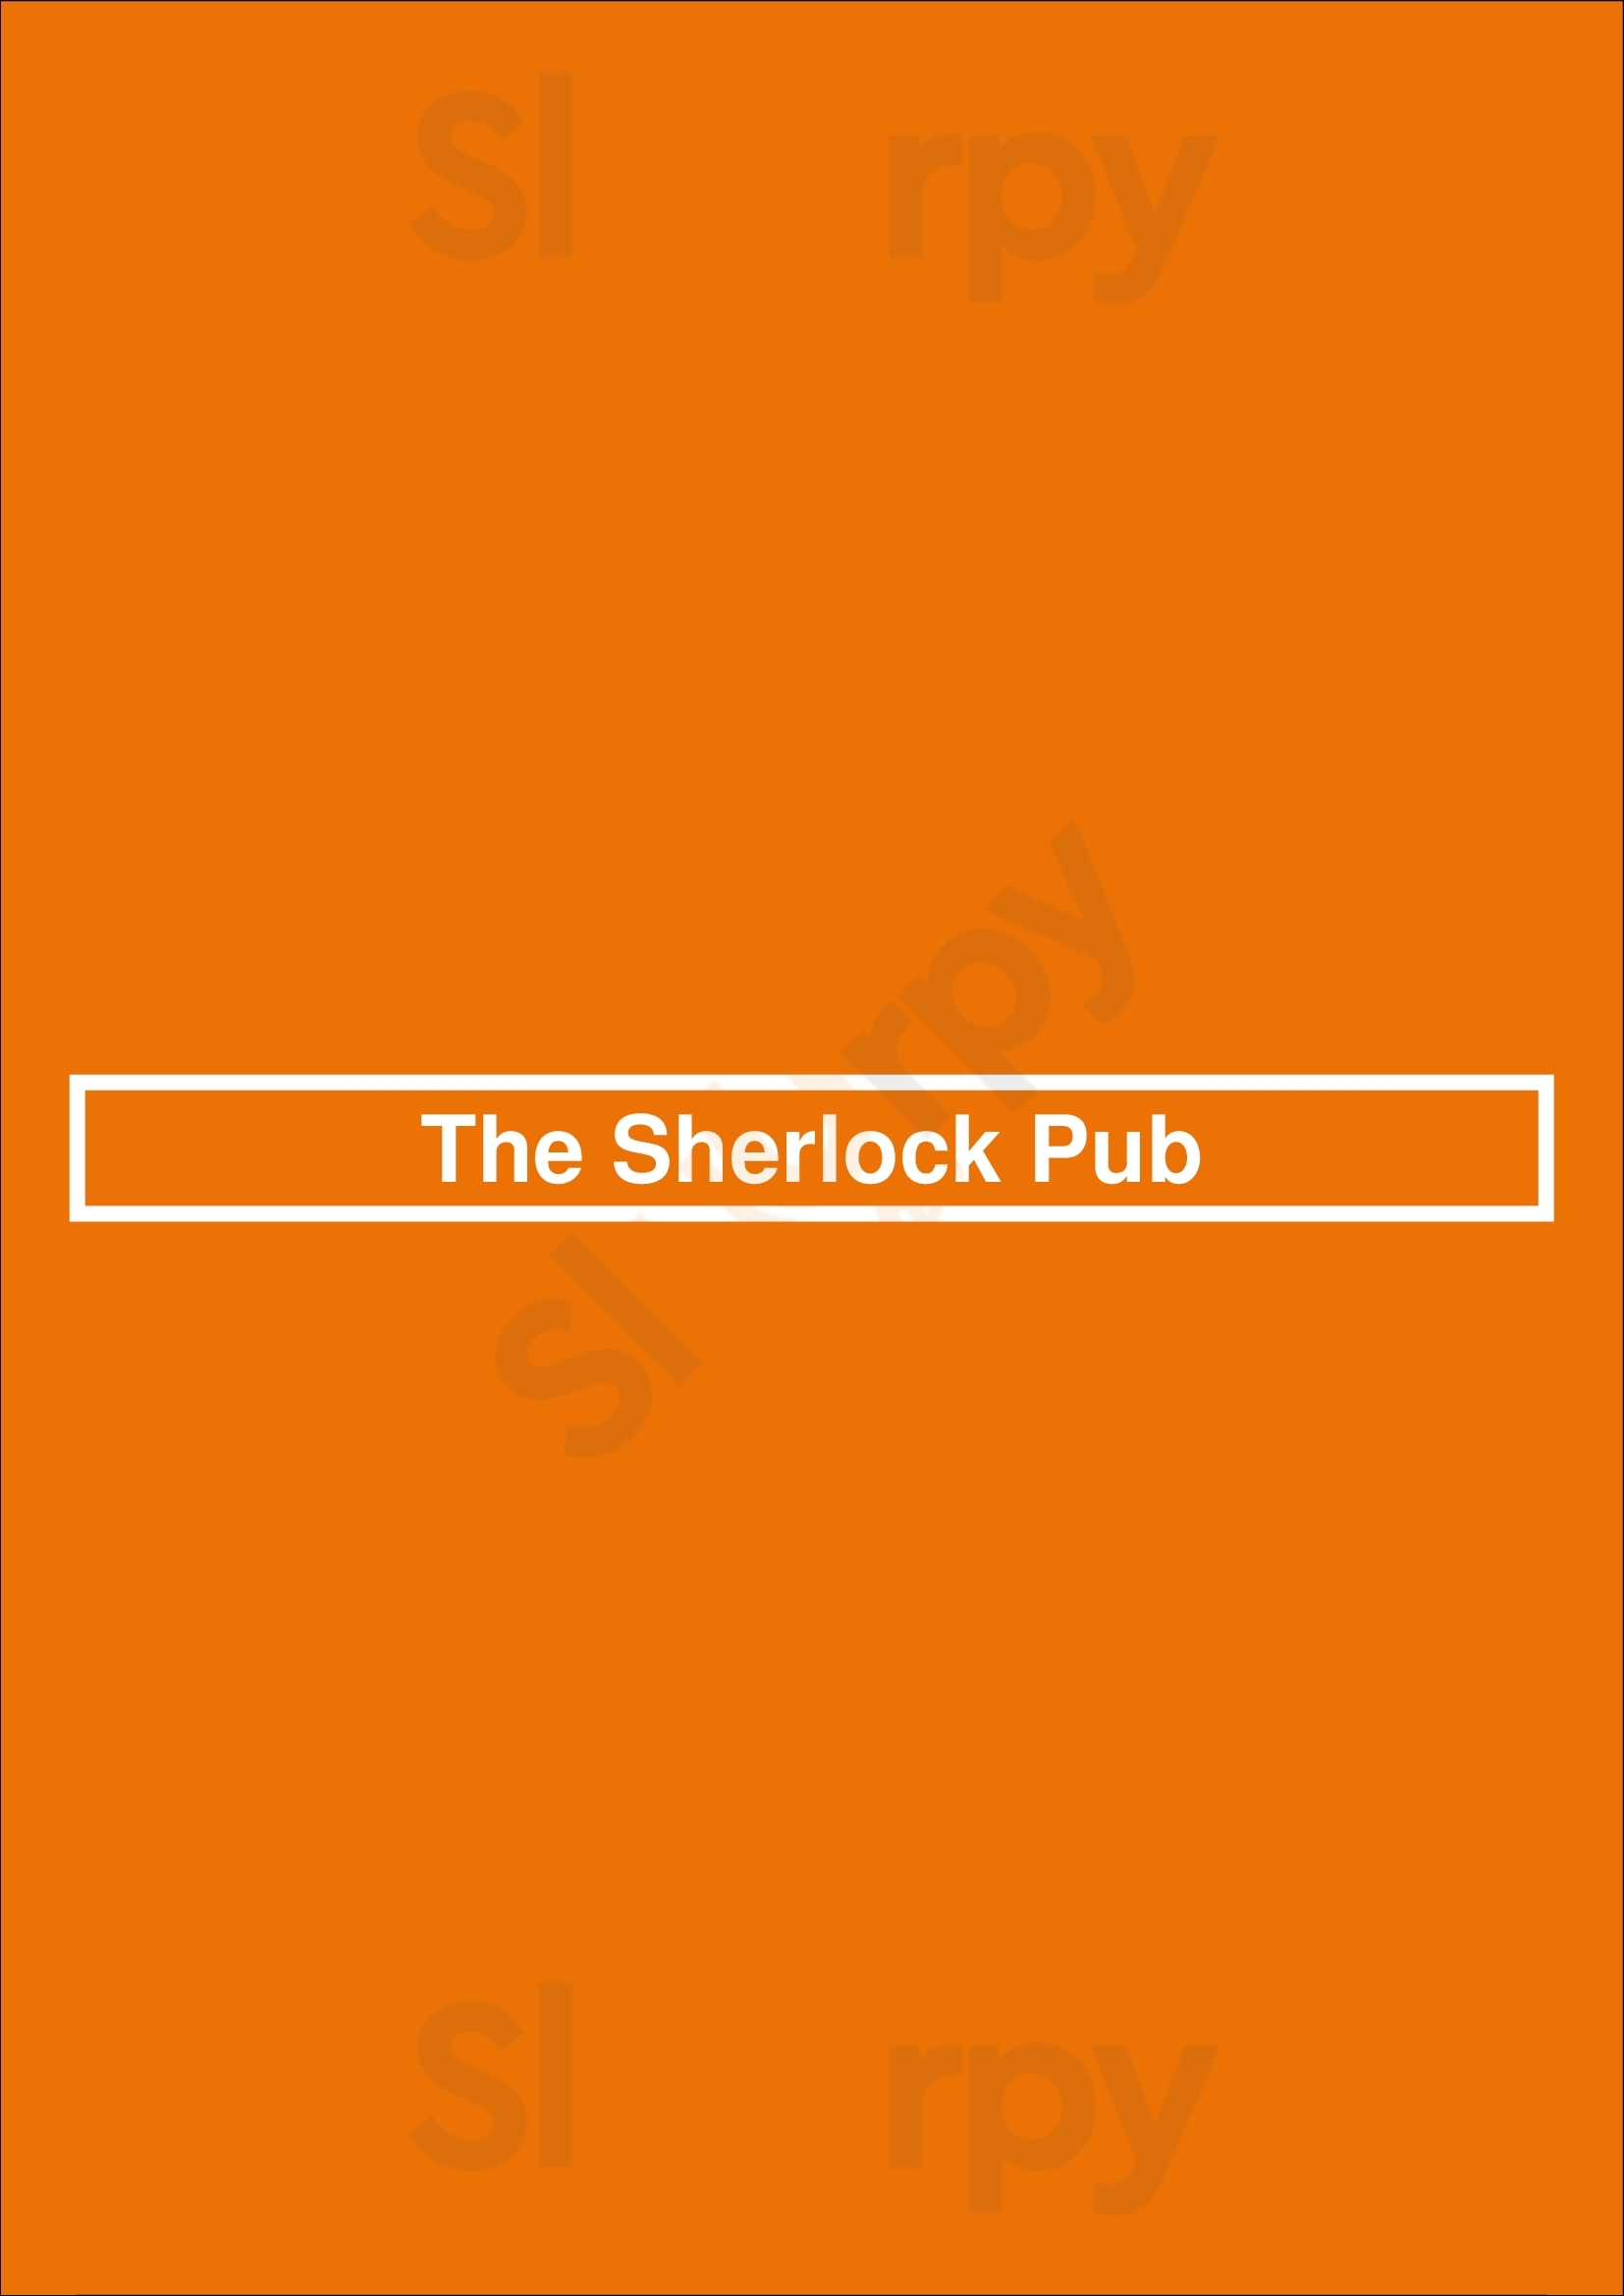 The Sherlock Pub Lille Menu - 1